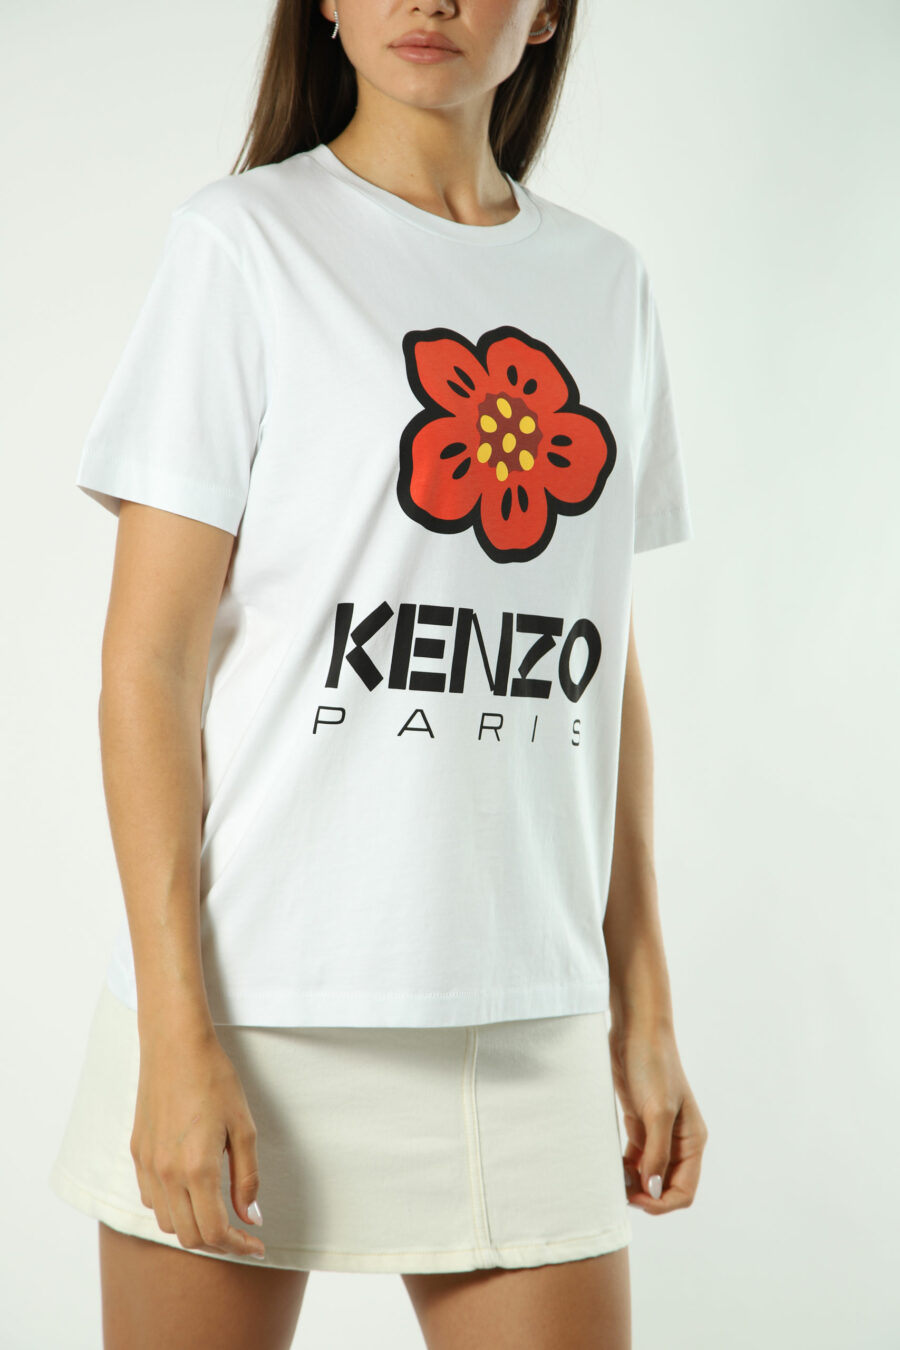 T-shirt branca com maxilogo de flores laranja - Fotos 1382